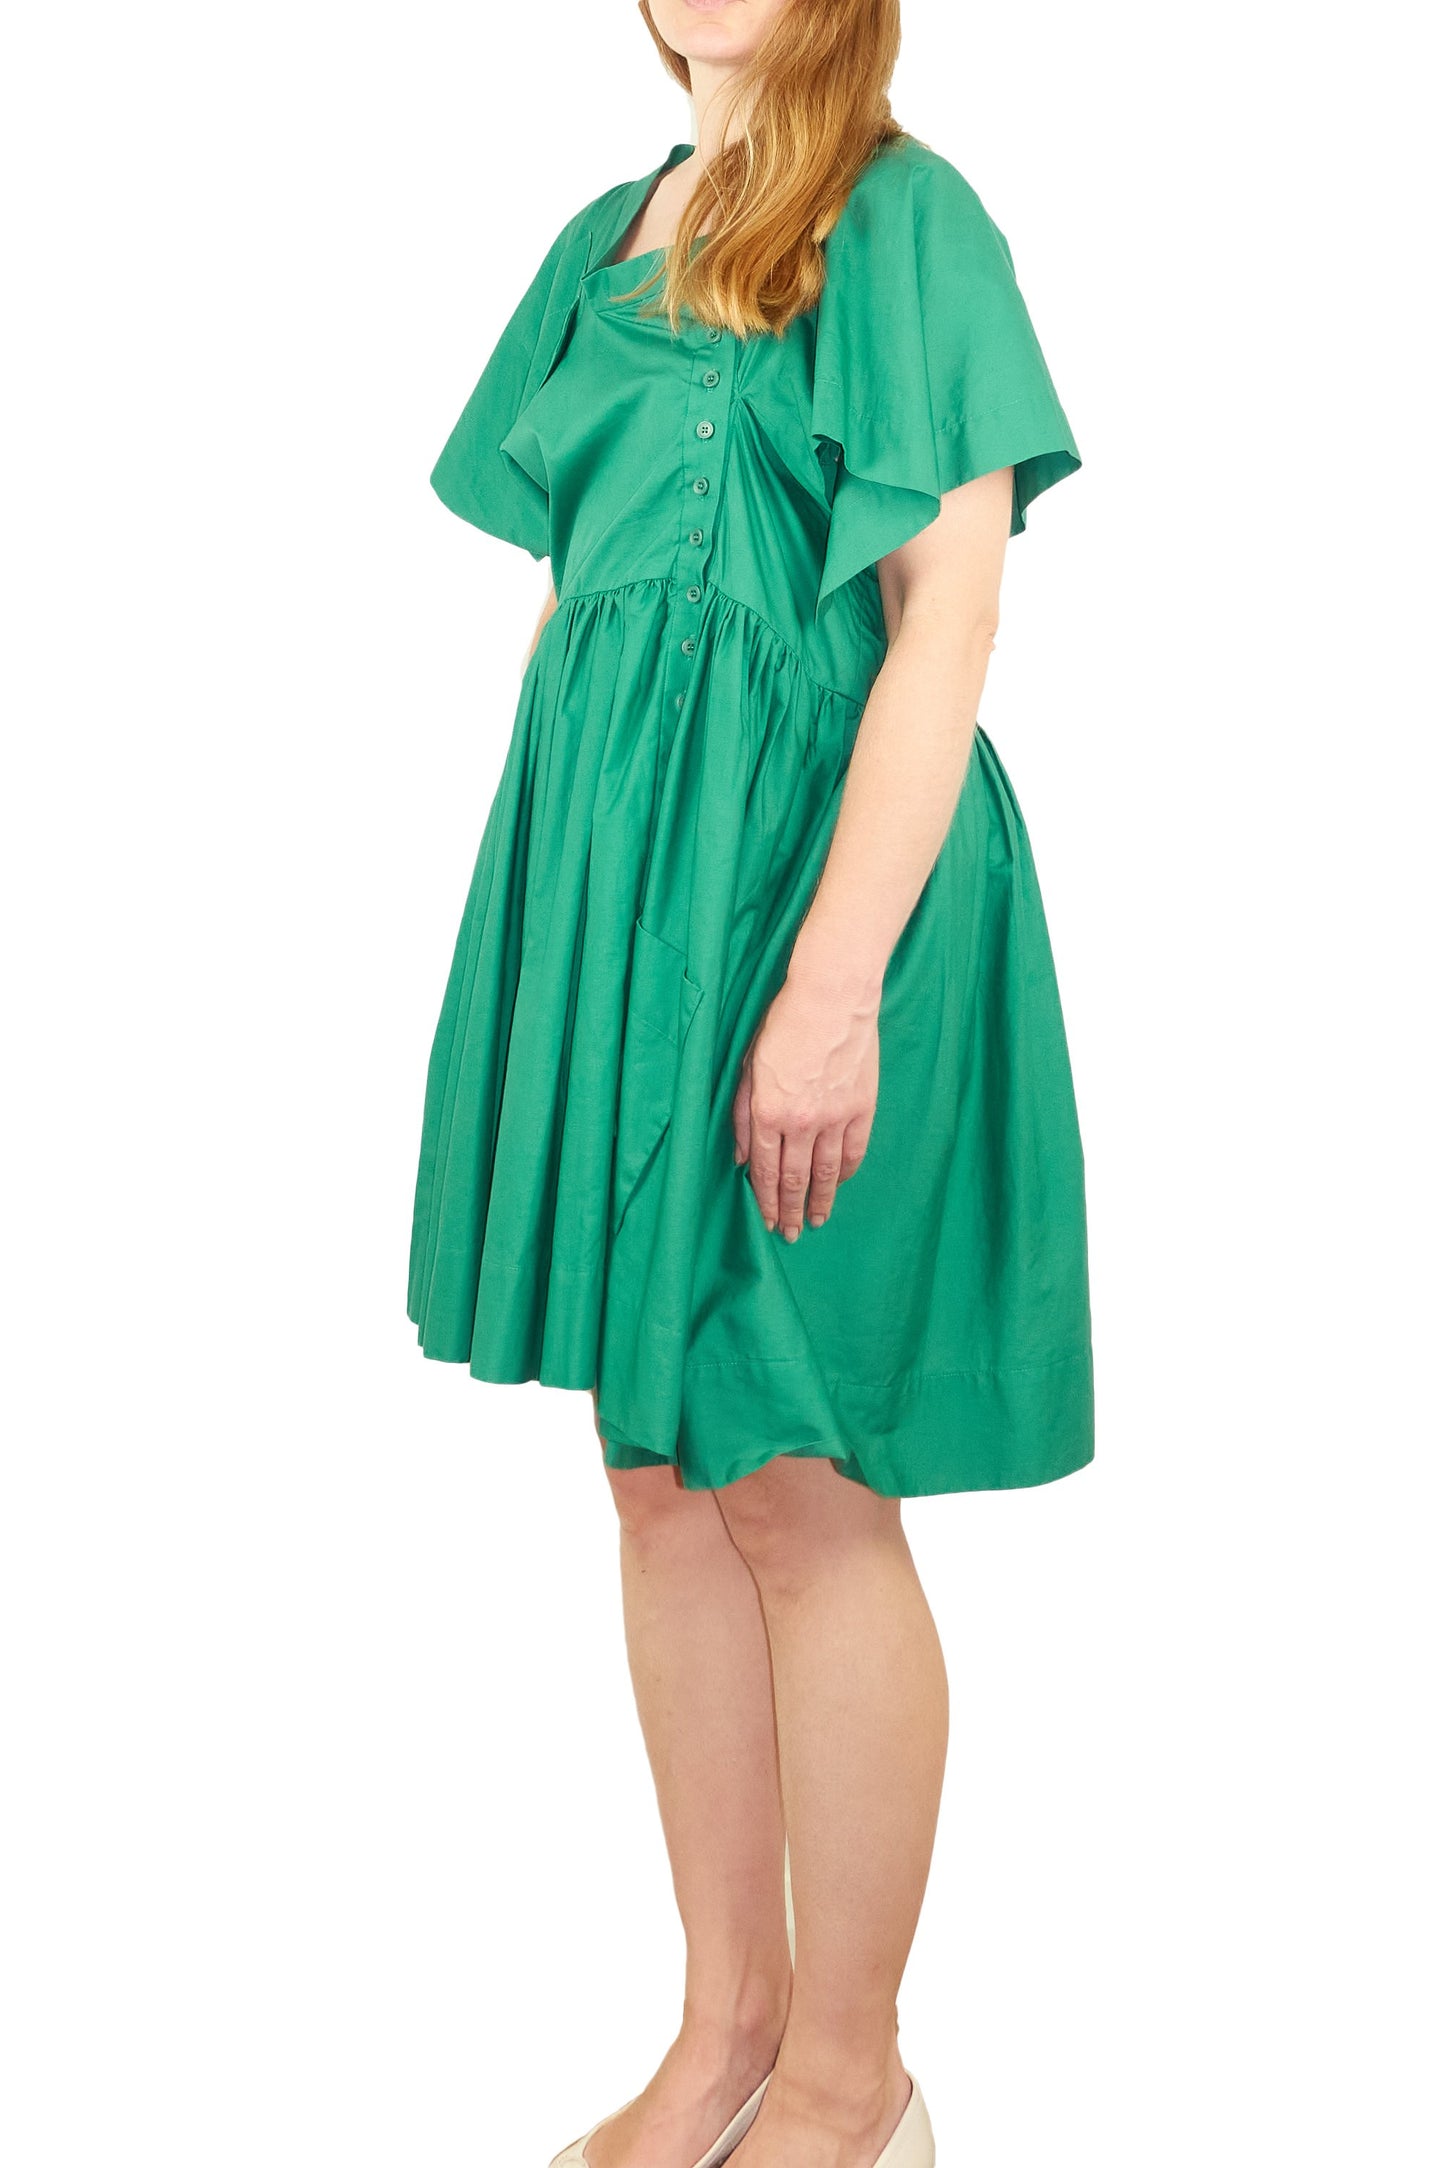 Bernhard Willhelm asymmetrical green dress